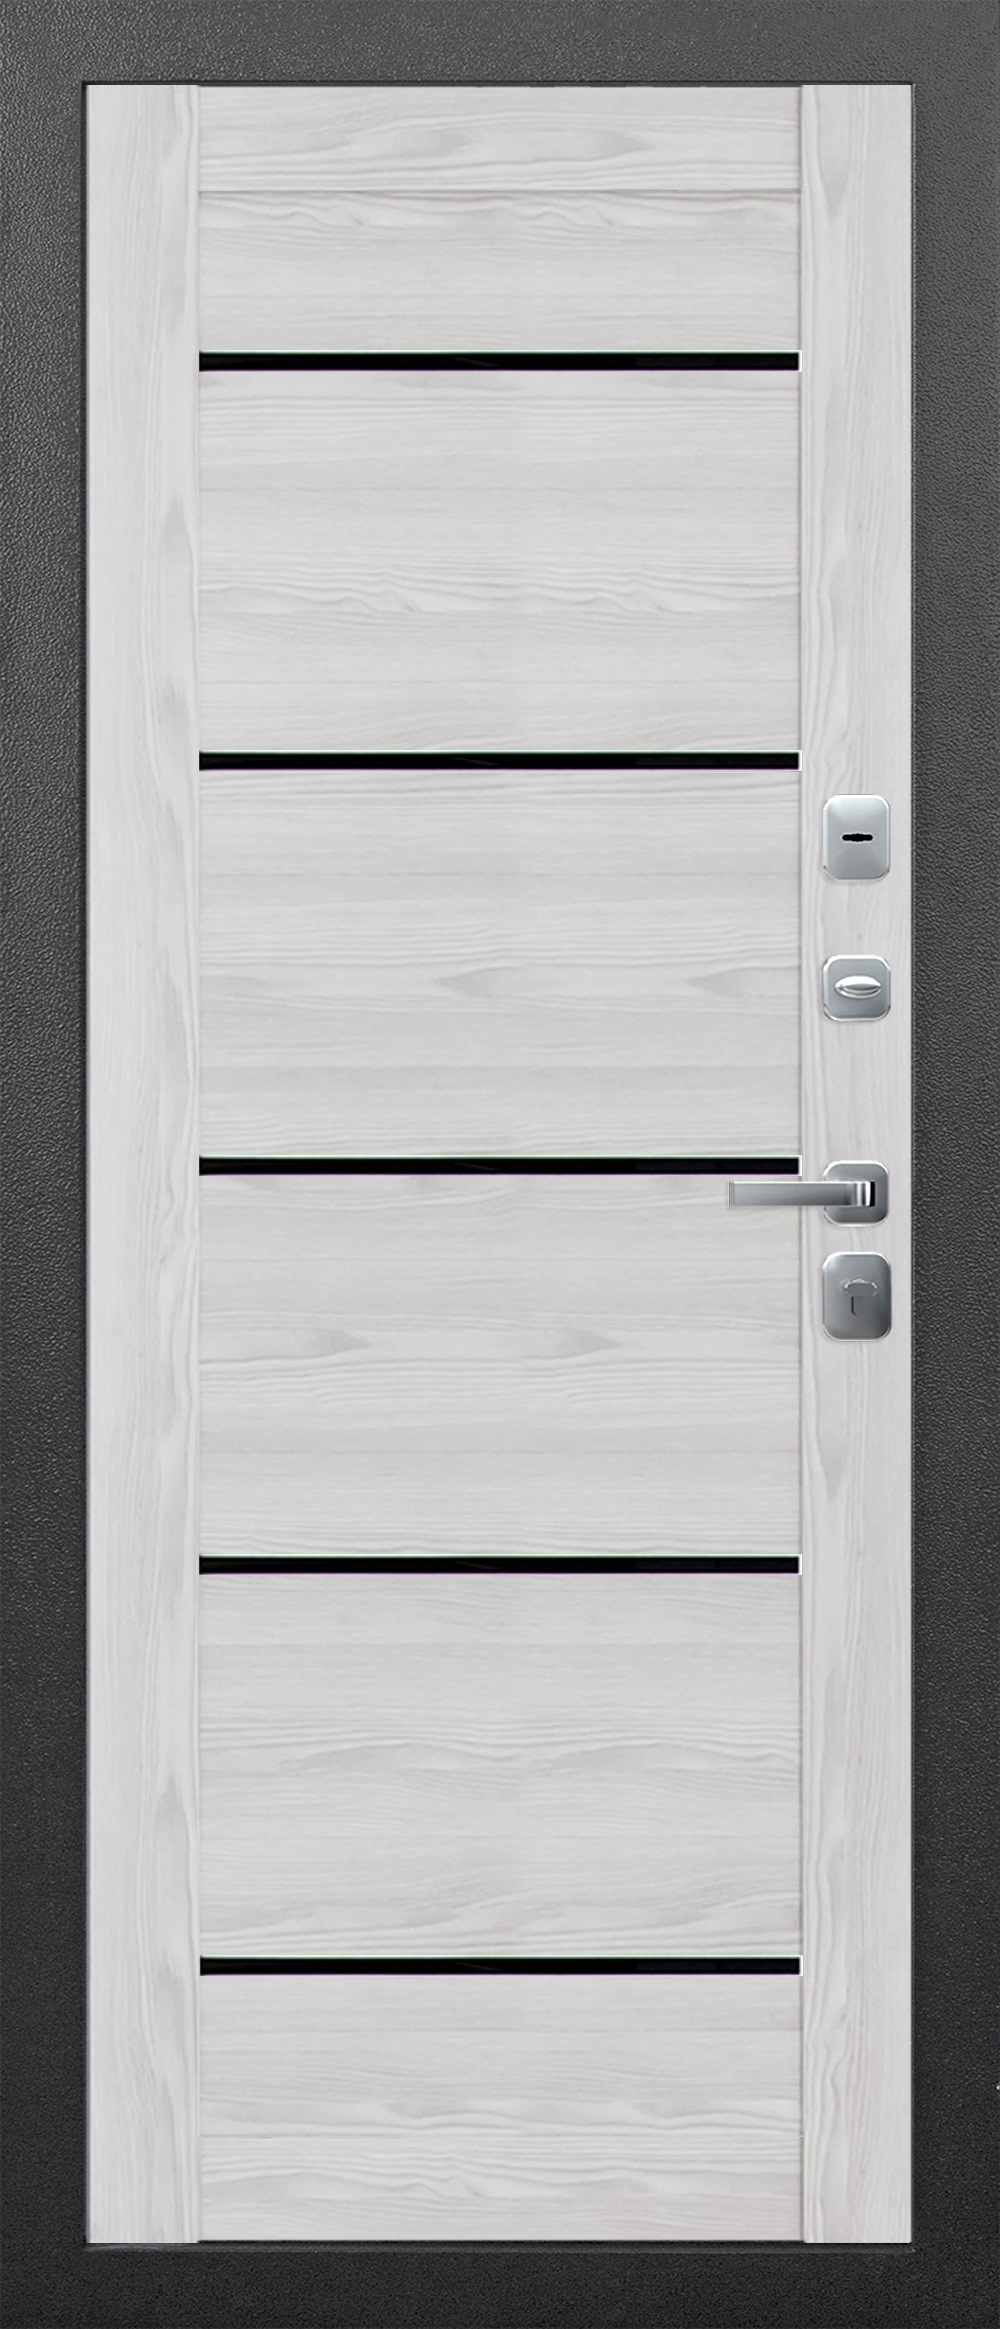 Феррони Входная дверь 11 см Изотерма Серебро Царга Астана черный, арт. 0003794 - фото №1